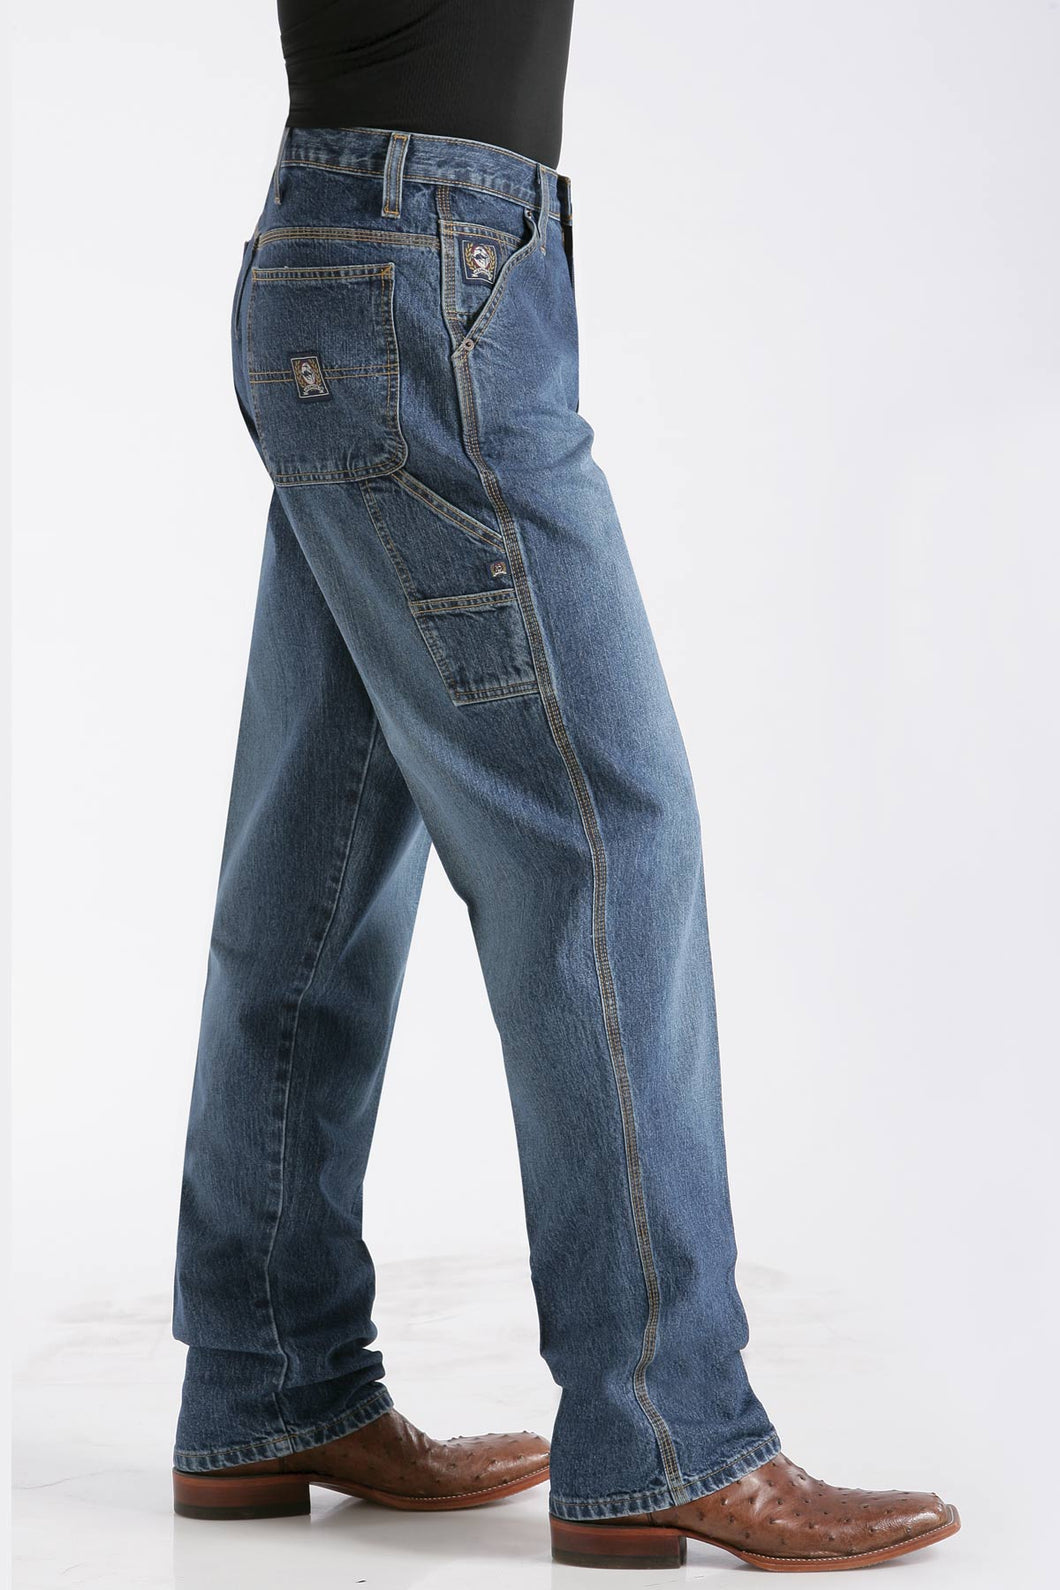 CINCH - Men's Loose Fit BLUE LABEL (CARPENTER) Jeans